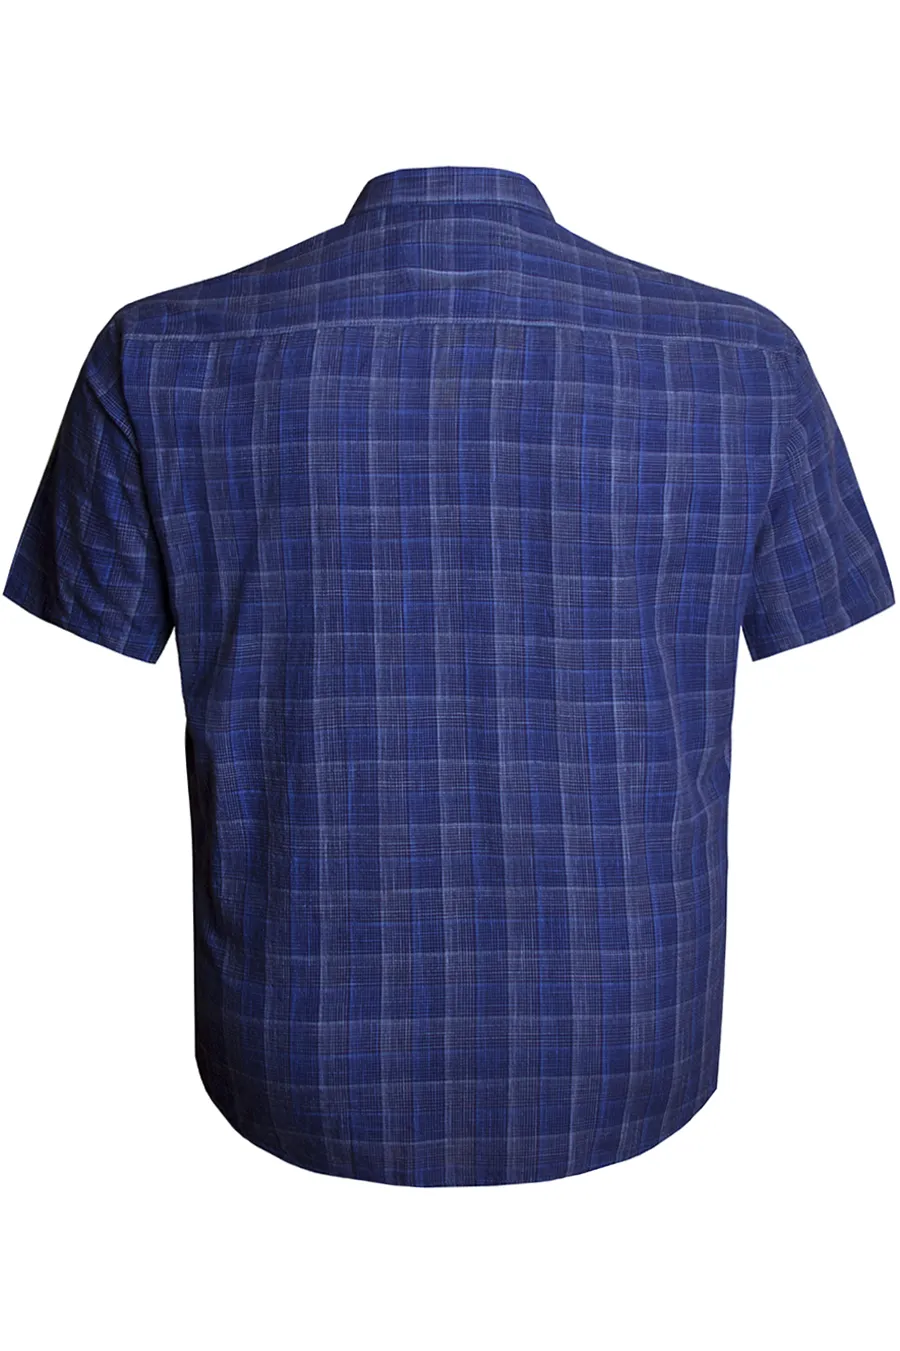 Рубашка из синего льна большого размера